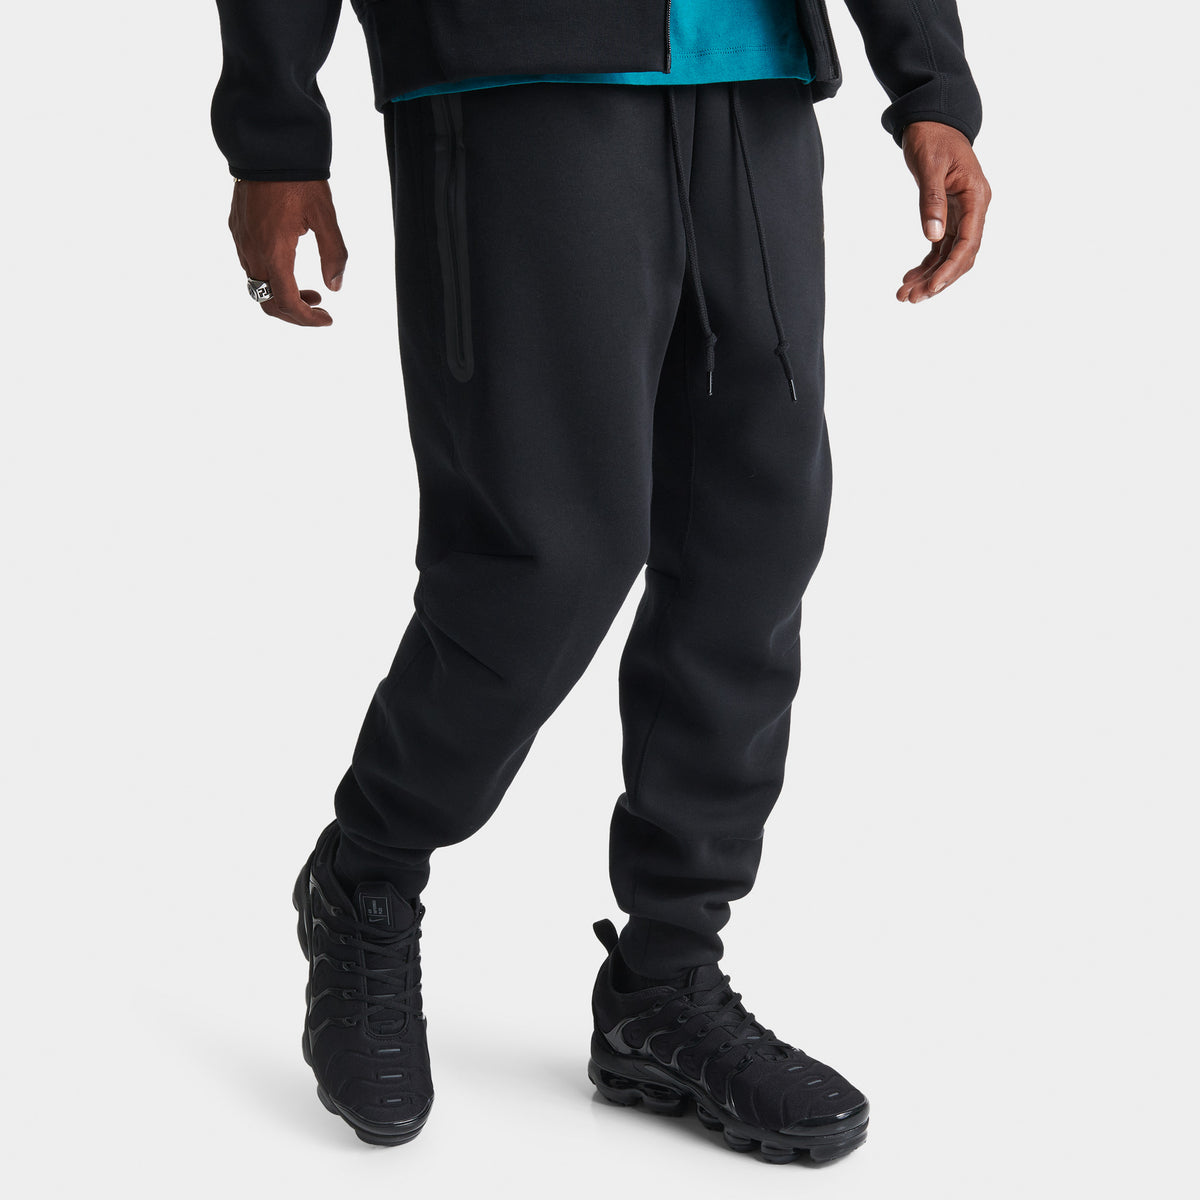 Pantalon de jogging Nike Sportswear Tech Fleece Slim Fit Noir / NOir